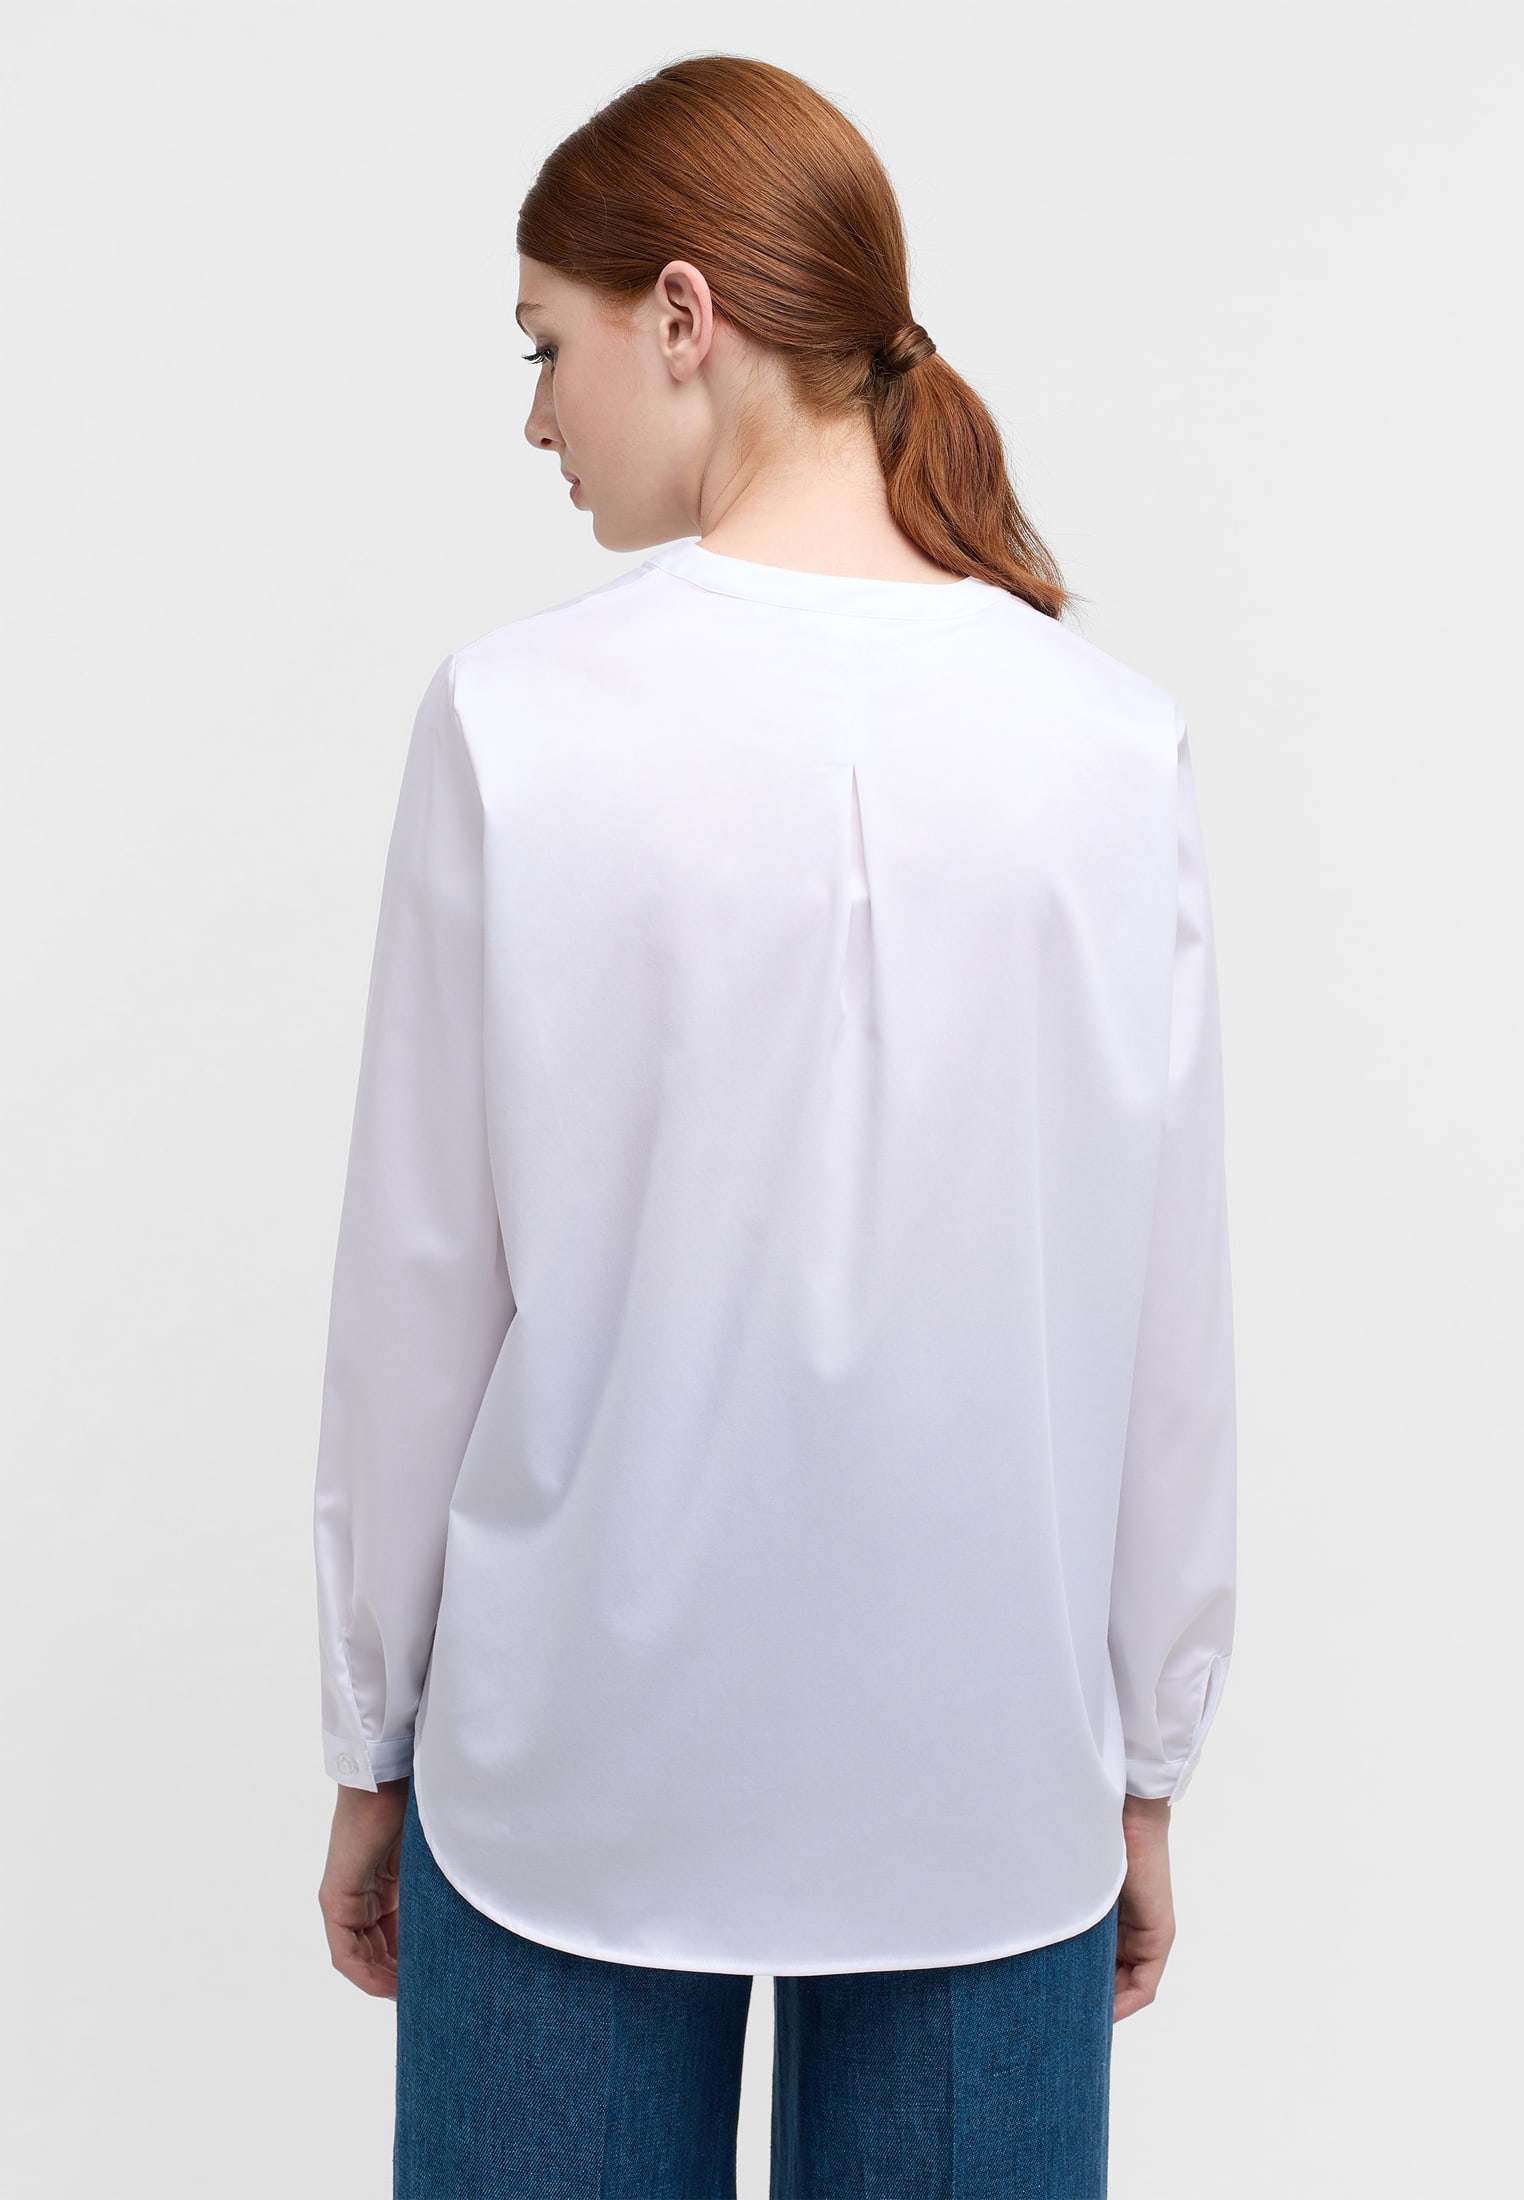 Satin Shirt Bluse in weiß weiß | Langarm unifarben | | 2BL00618-00-01-44-1/1 | 44